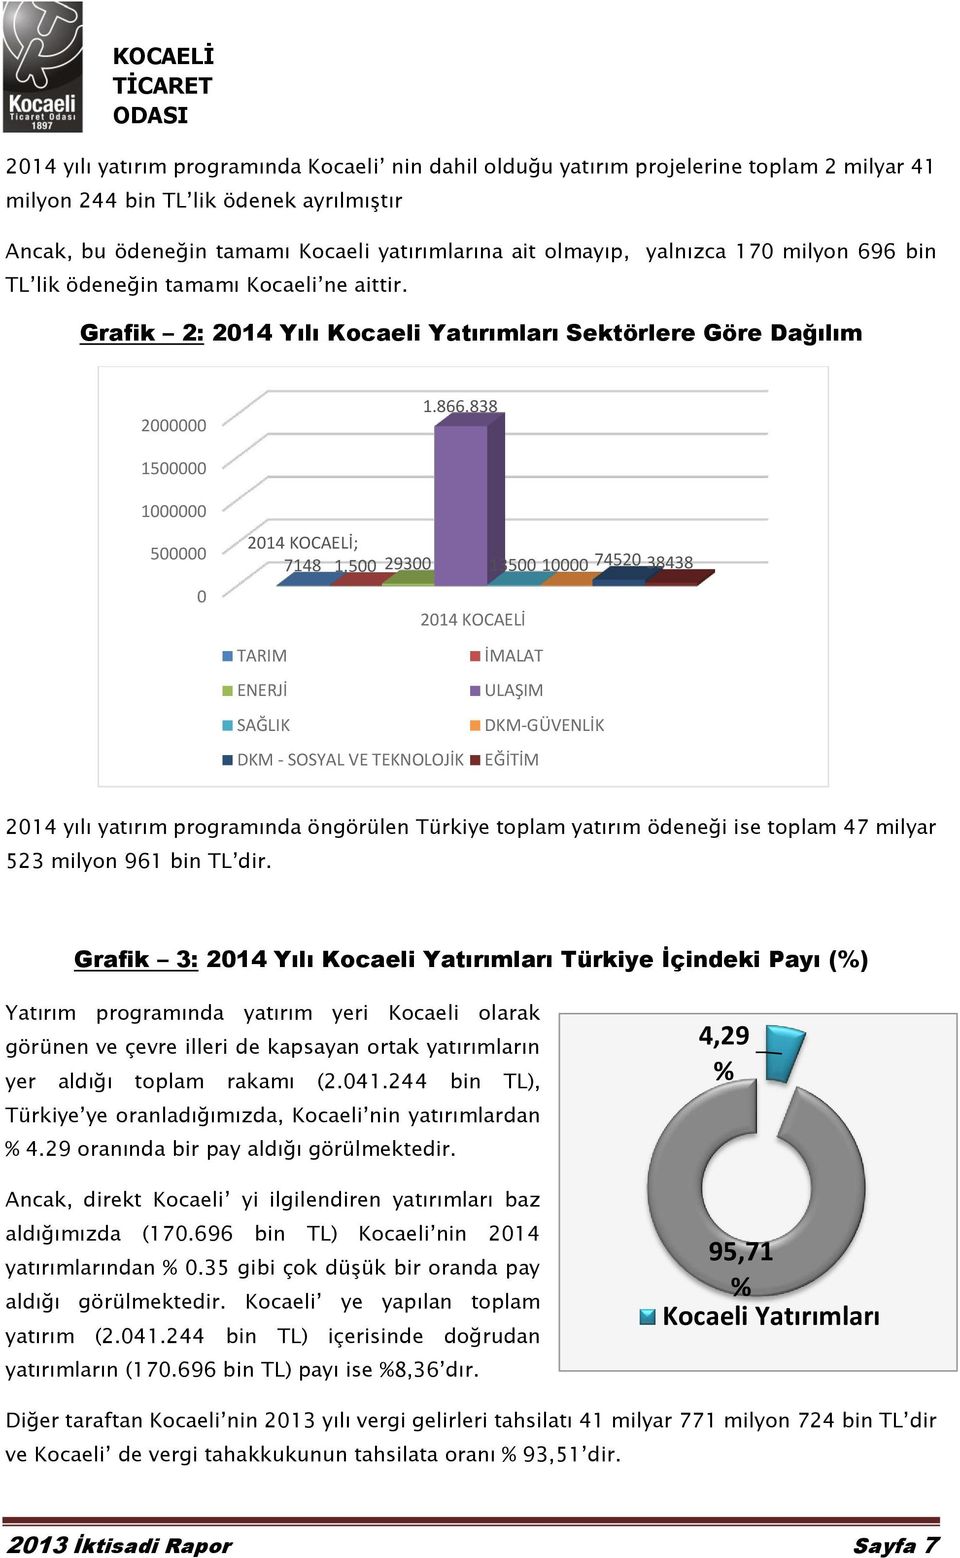 500 29300 TARIM ENERJİ SAĞLIK DKM - SOSYAL VE TEKNOLOJİK 2014 KOCAELİ 13500 10000 74520 38438 İMALAT ULAŞIM DKM-GÜVENLİK EĞİTİM 2014 yılı yatırım programında öngörülen Türkiye toplam yatırım ödeneği